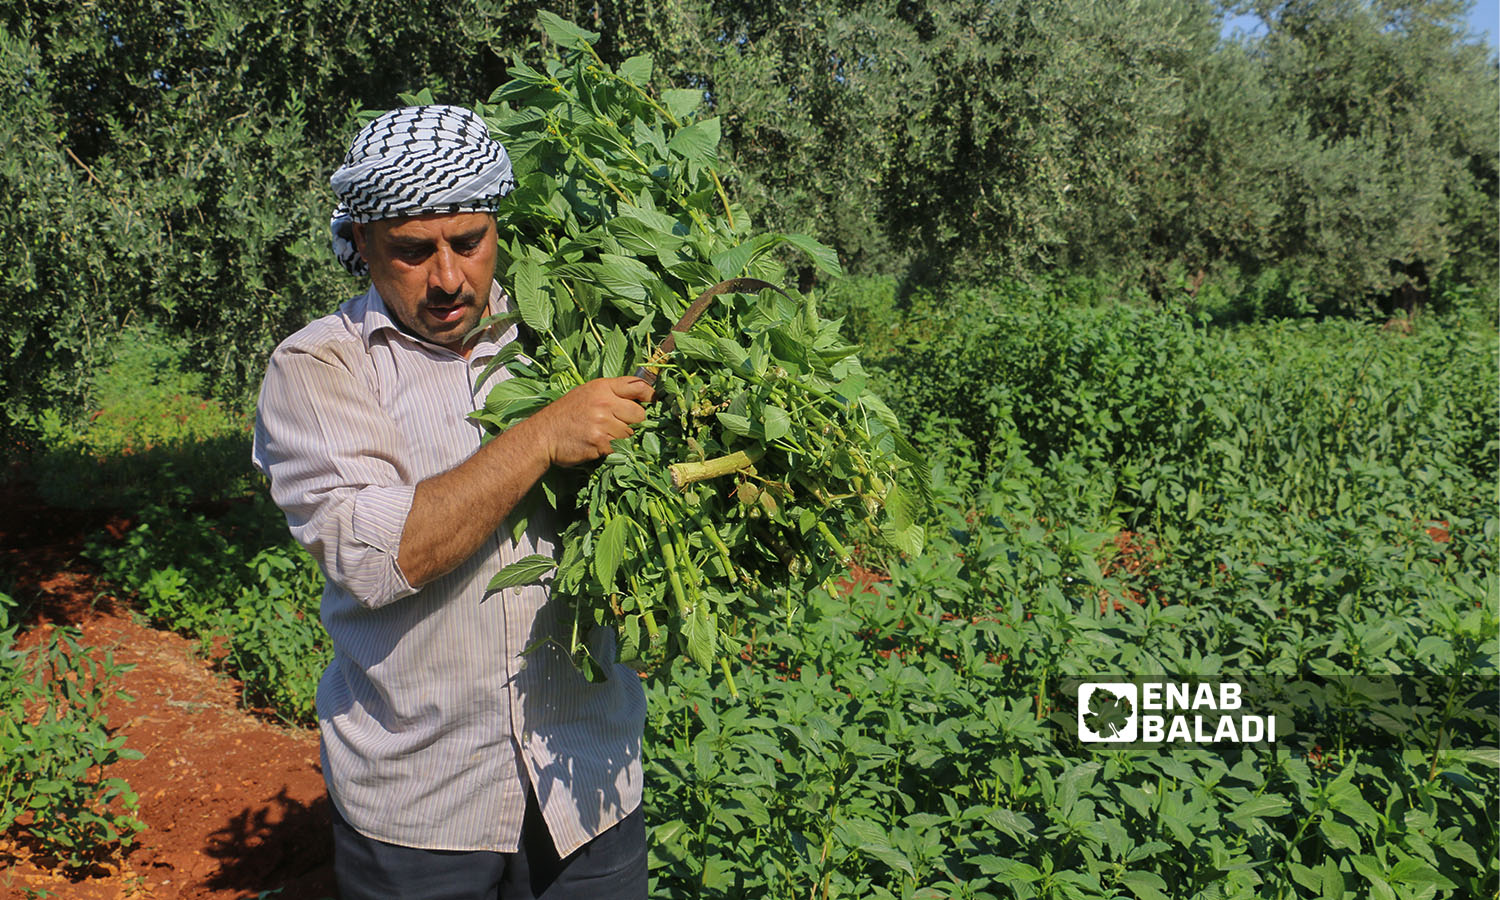 A Syrian man harvesting mulukhiyah plants with a scythe in Idlib countryside - 2 August 2021 (Enab Baladi / Iyad Abdul Jawad)
